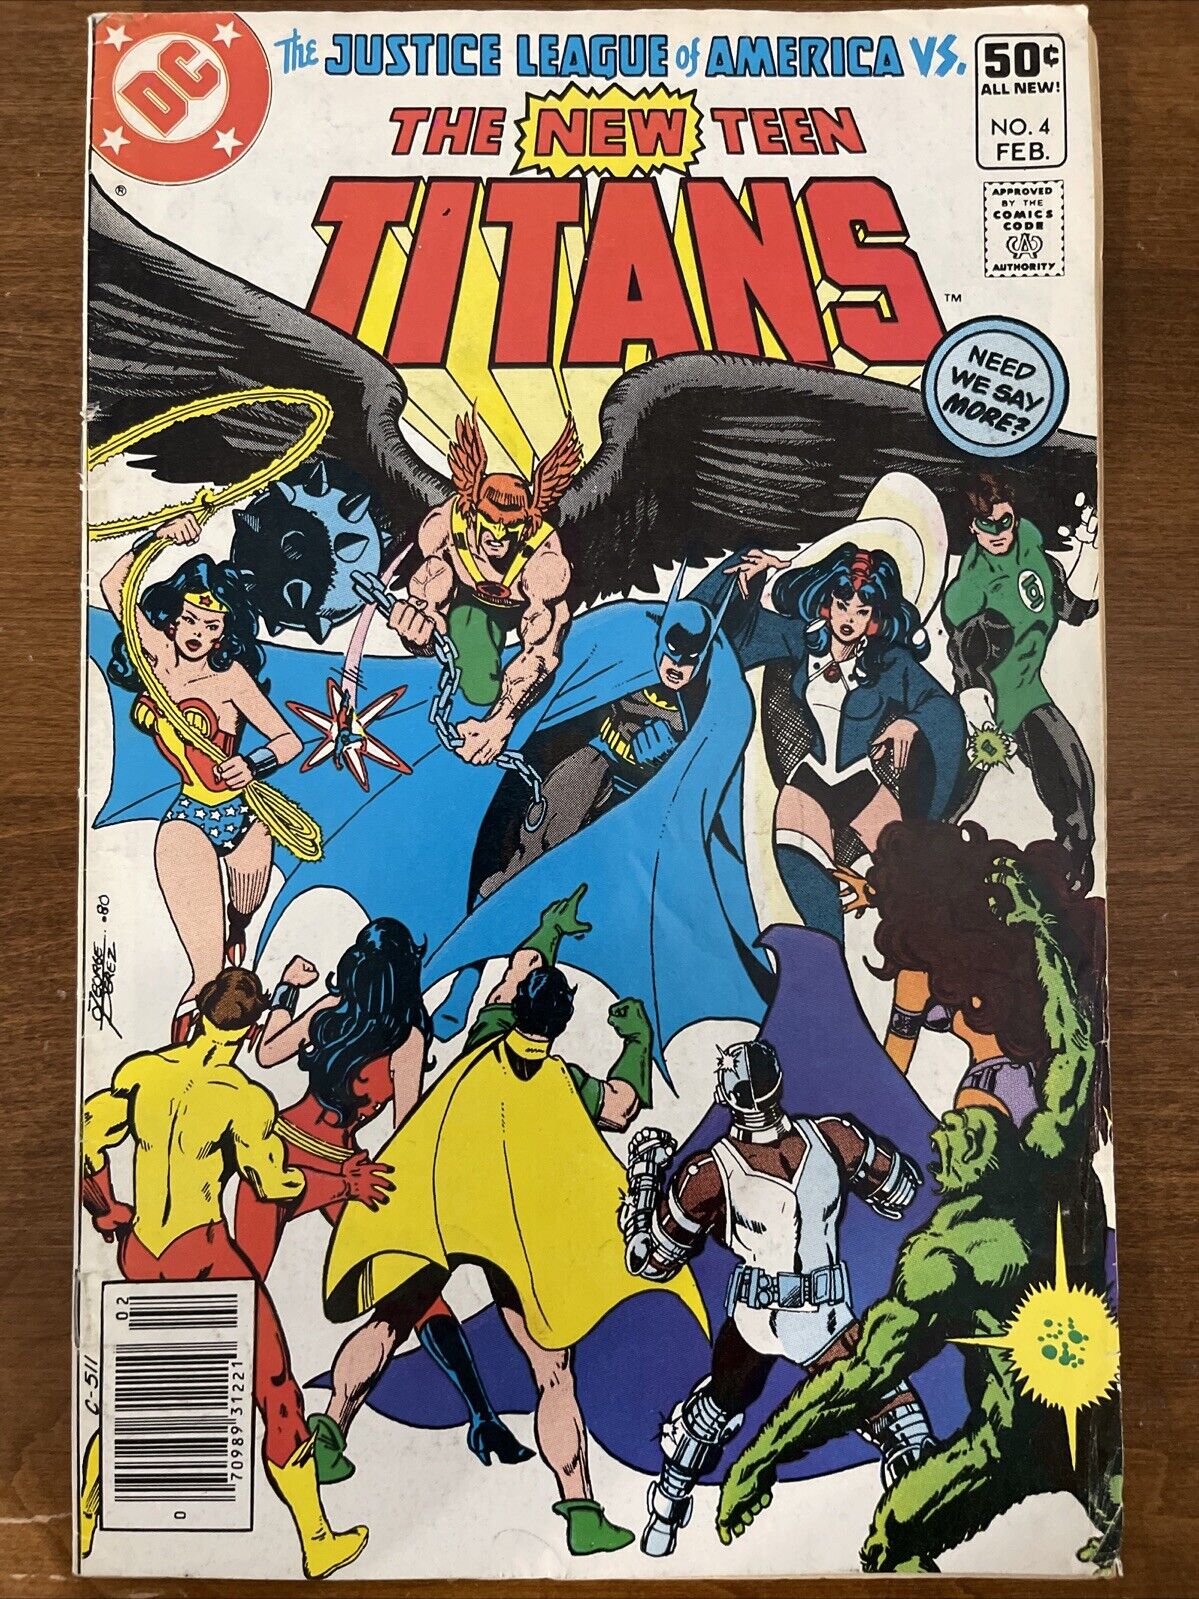 NEW TEEN TITANS #4 vs The Justice League of America DC Comics 1981